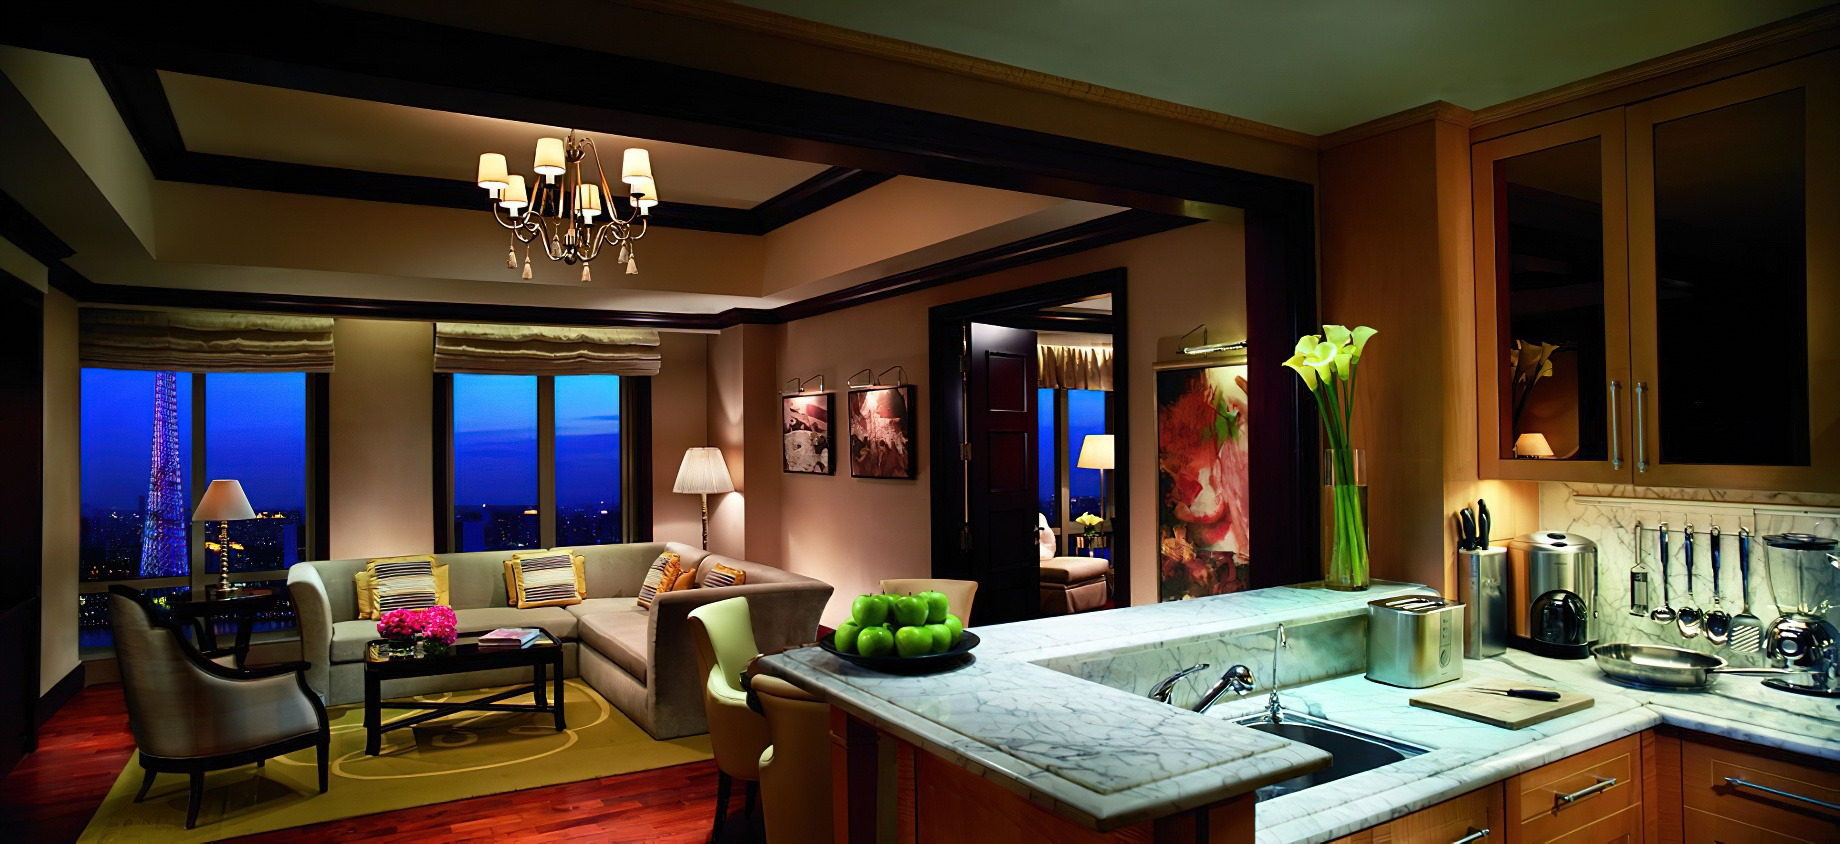 The Ritz-Carlton, Guangzhou Hotel – Guangzhou, China – Three Bedroom Residence